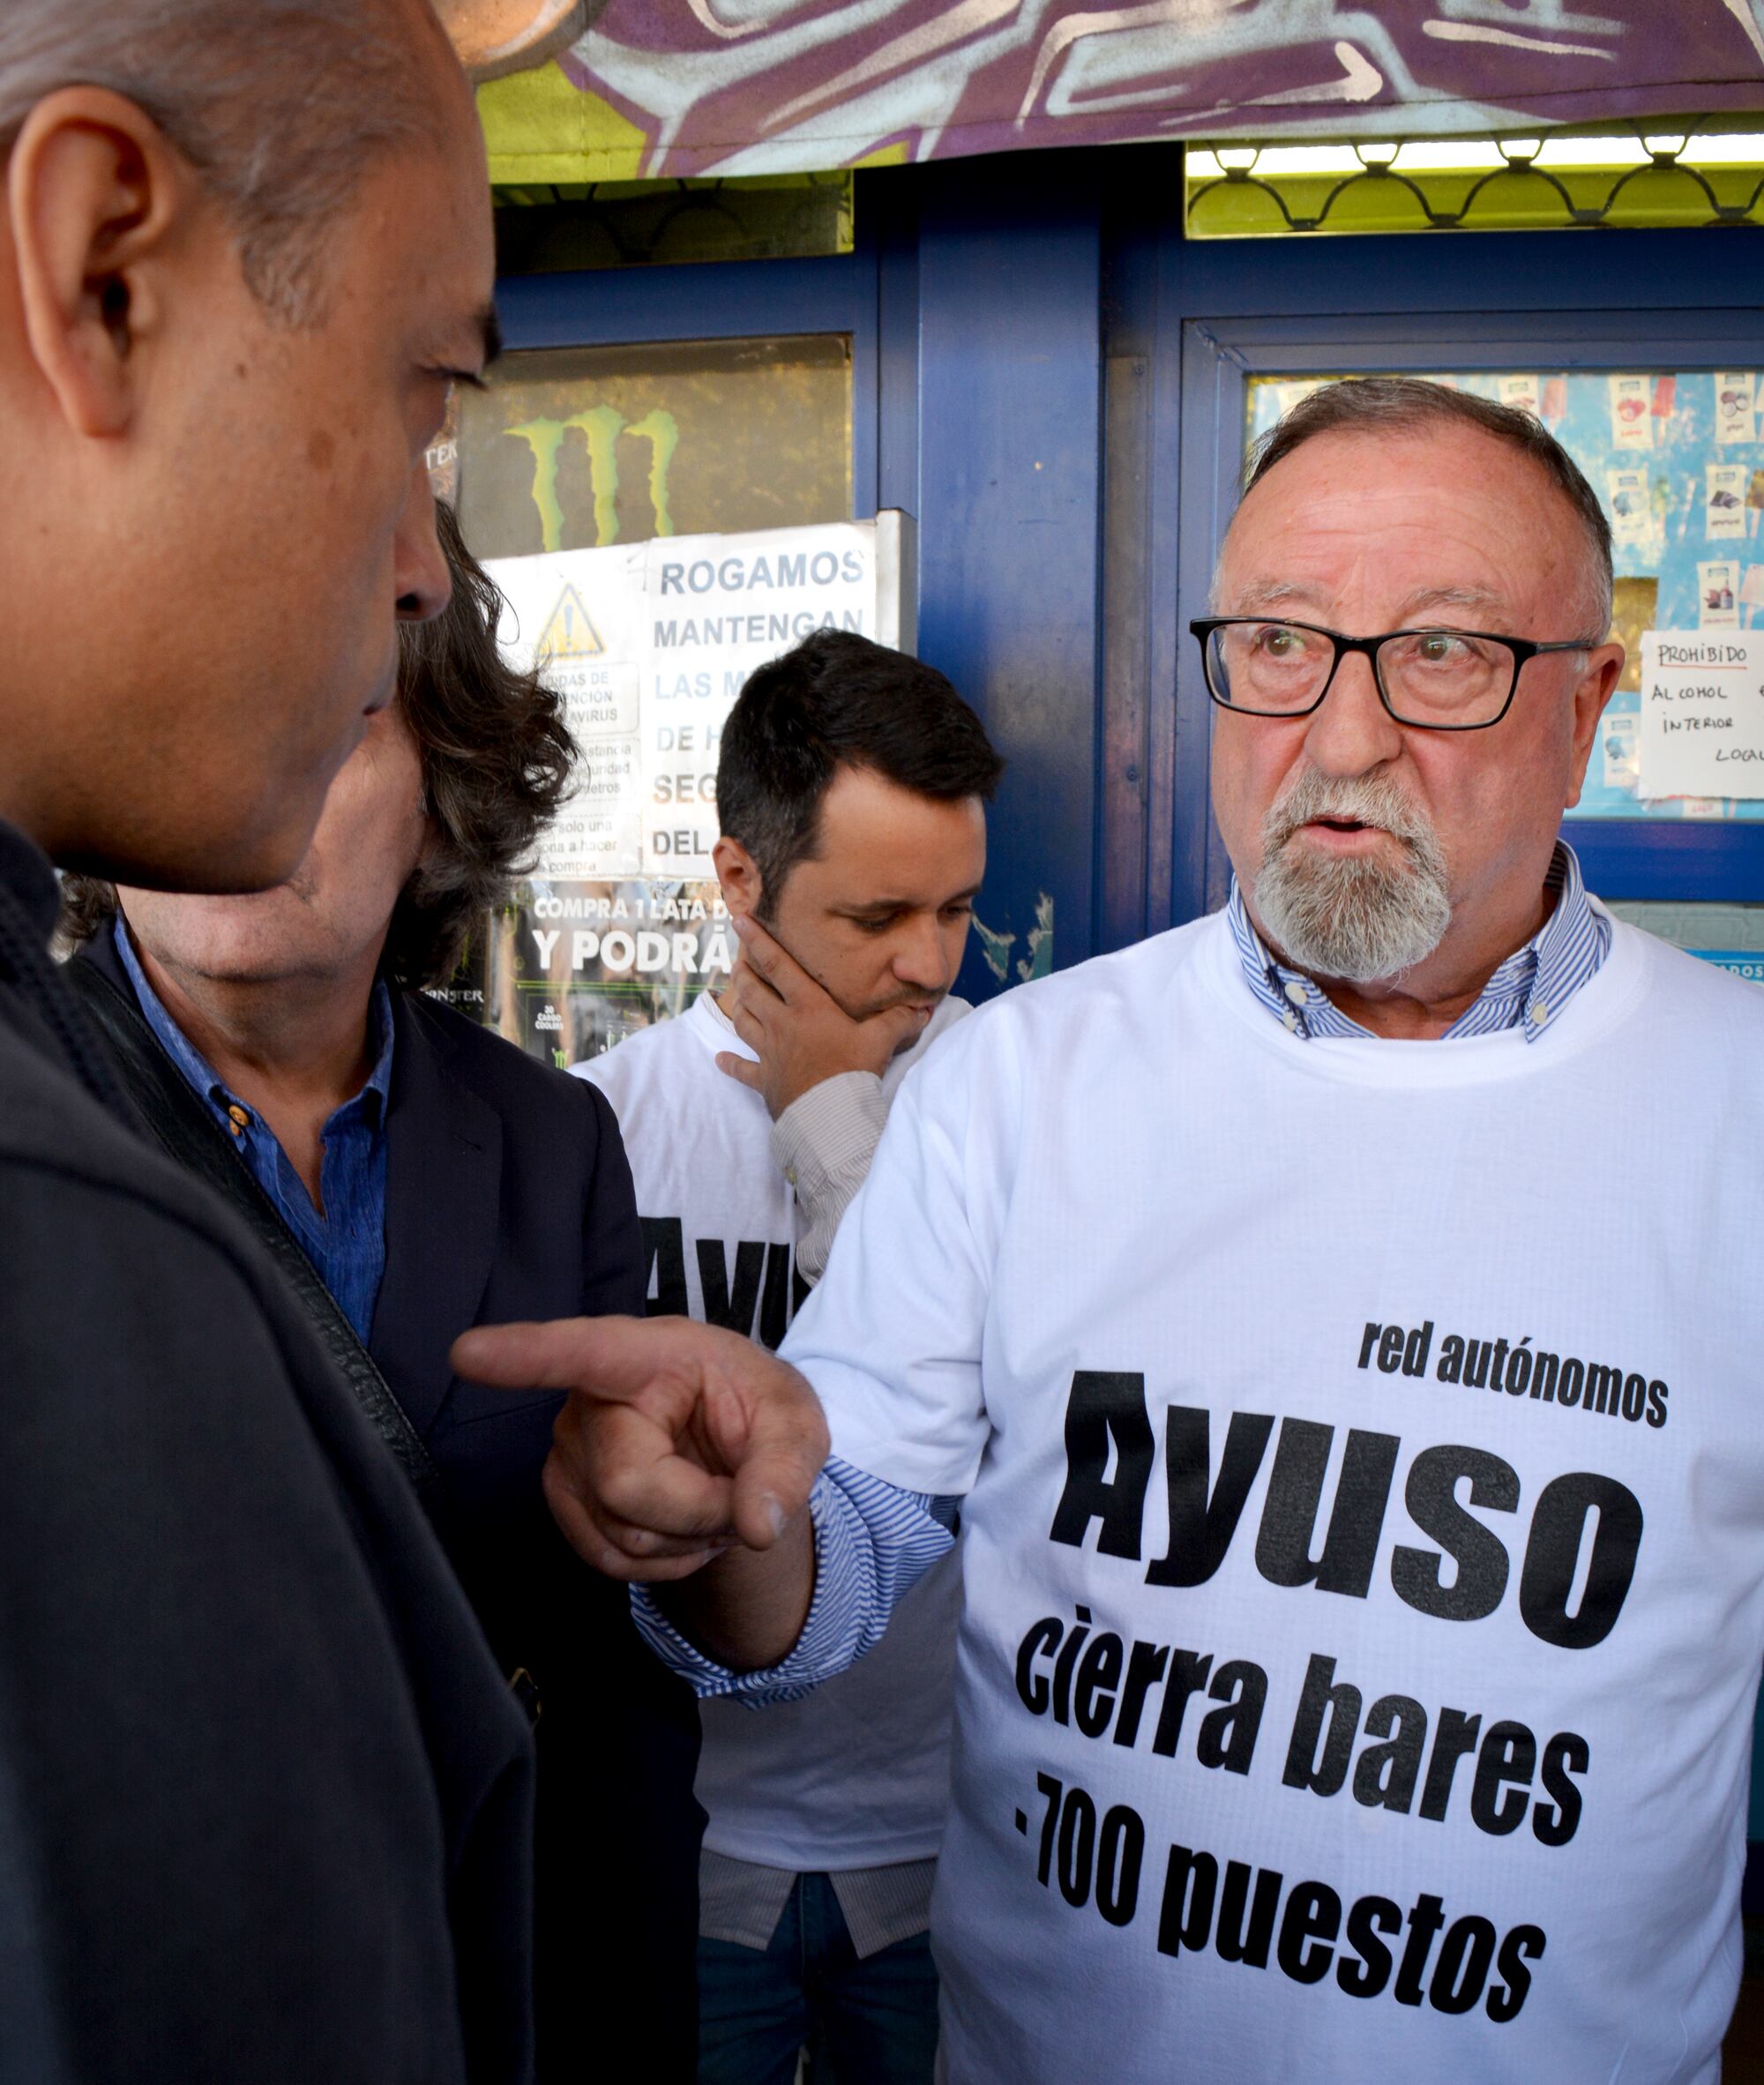 García negocia con el vocero de la empresa Metro para aplazar el desalojo de su local de frutos secos en Aluche.